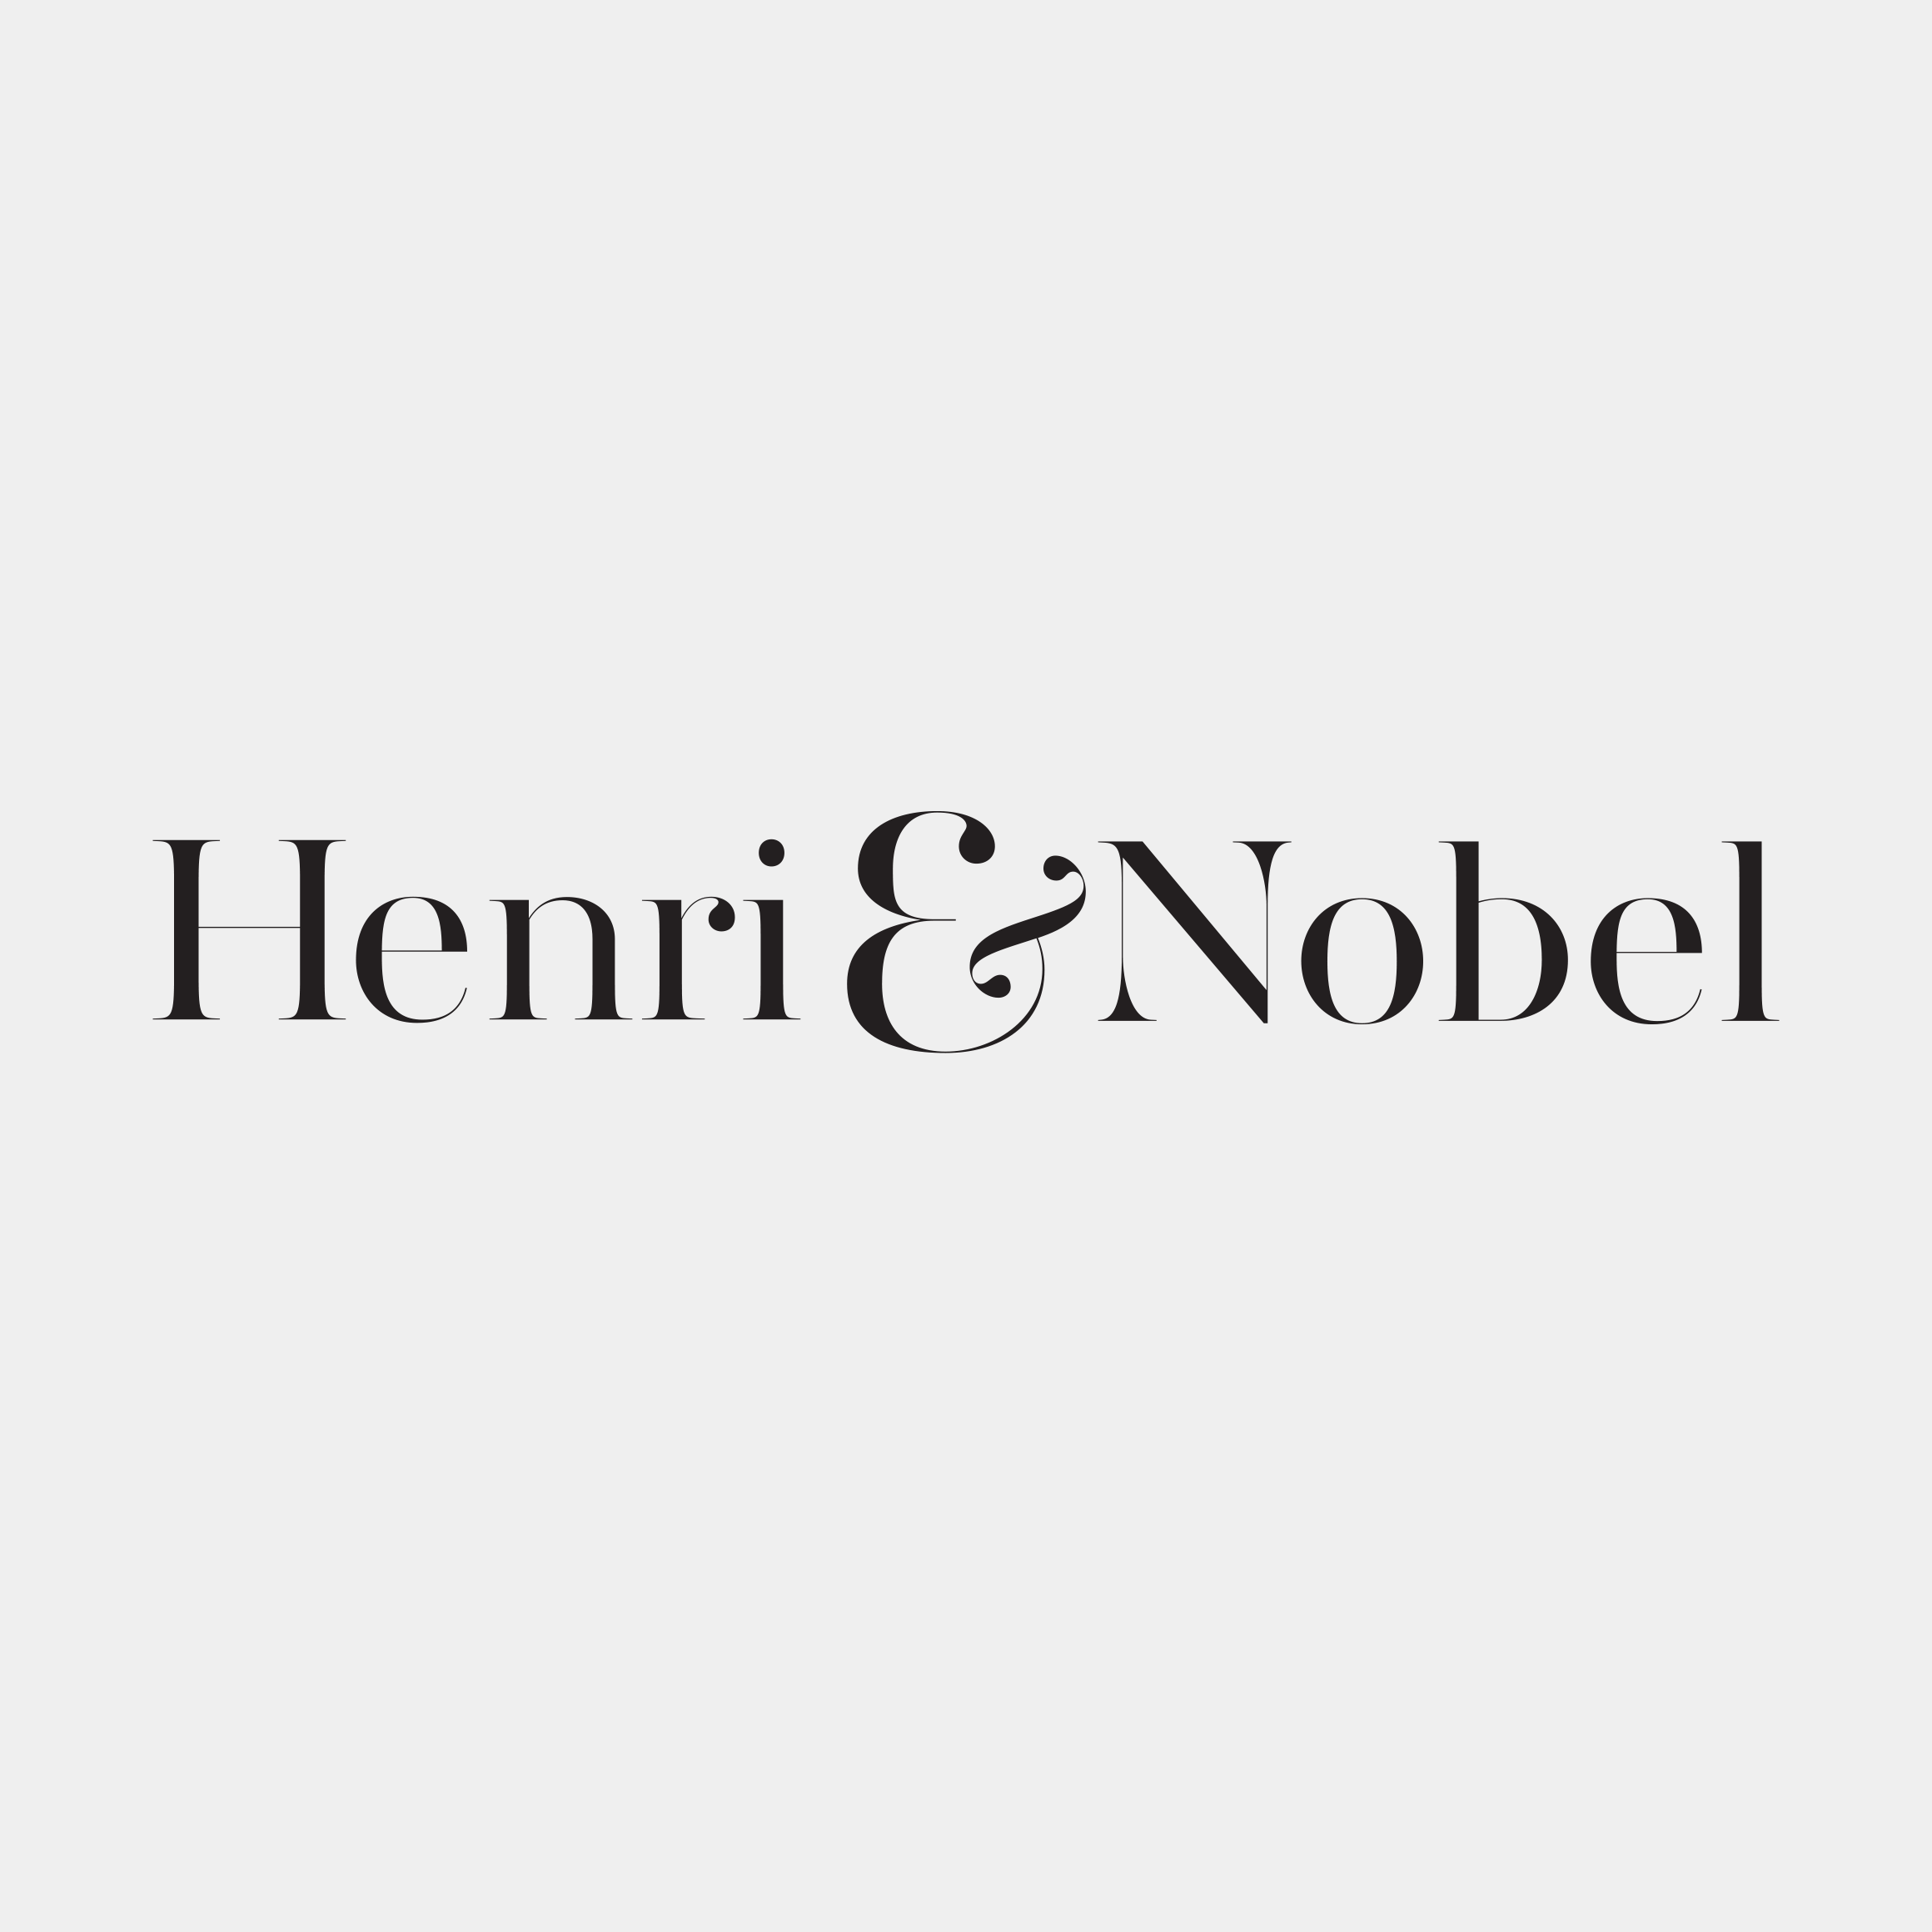 henri and nobel wordmark